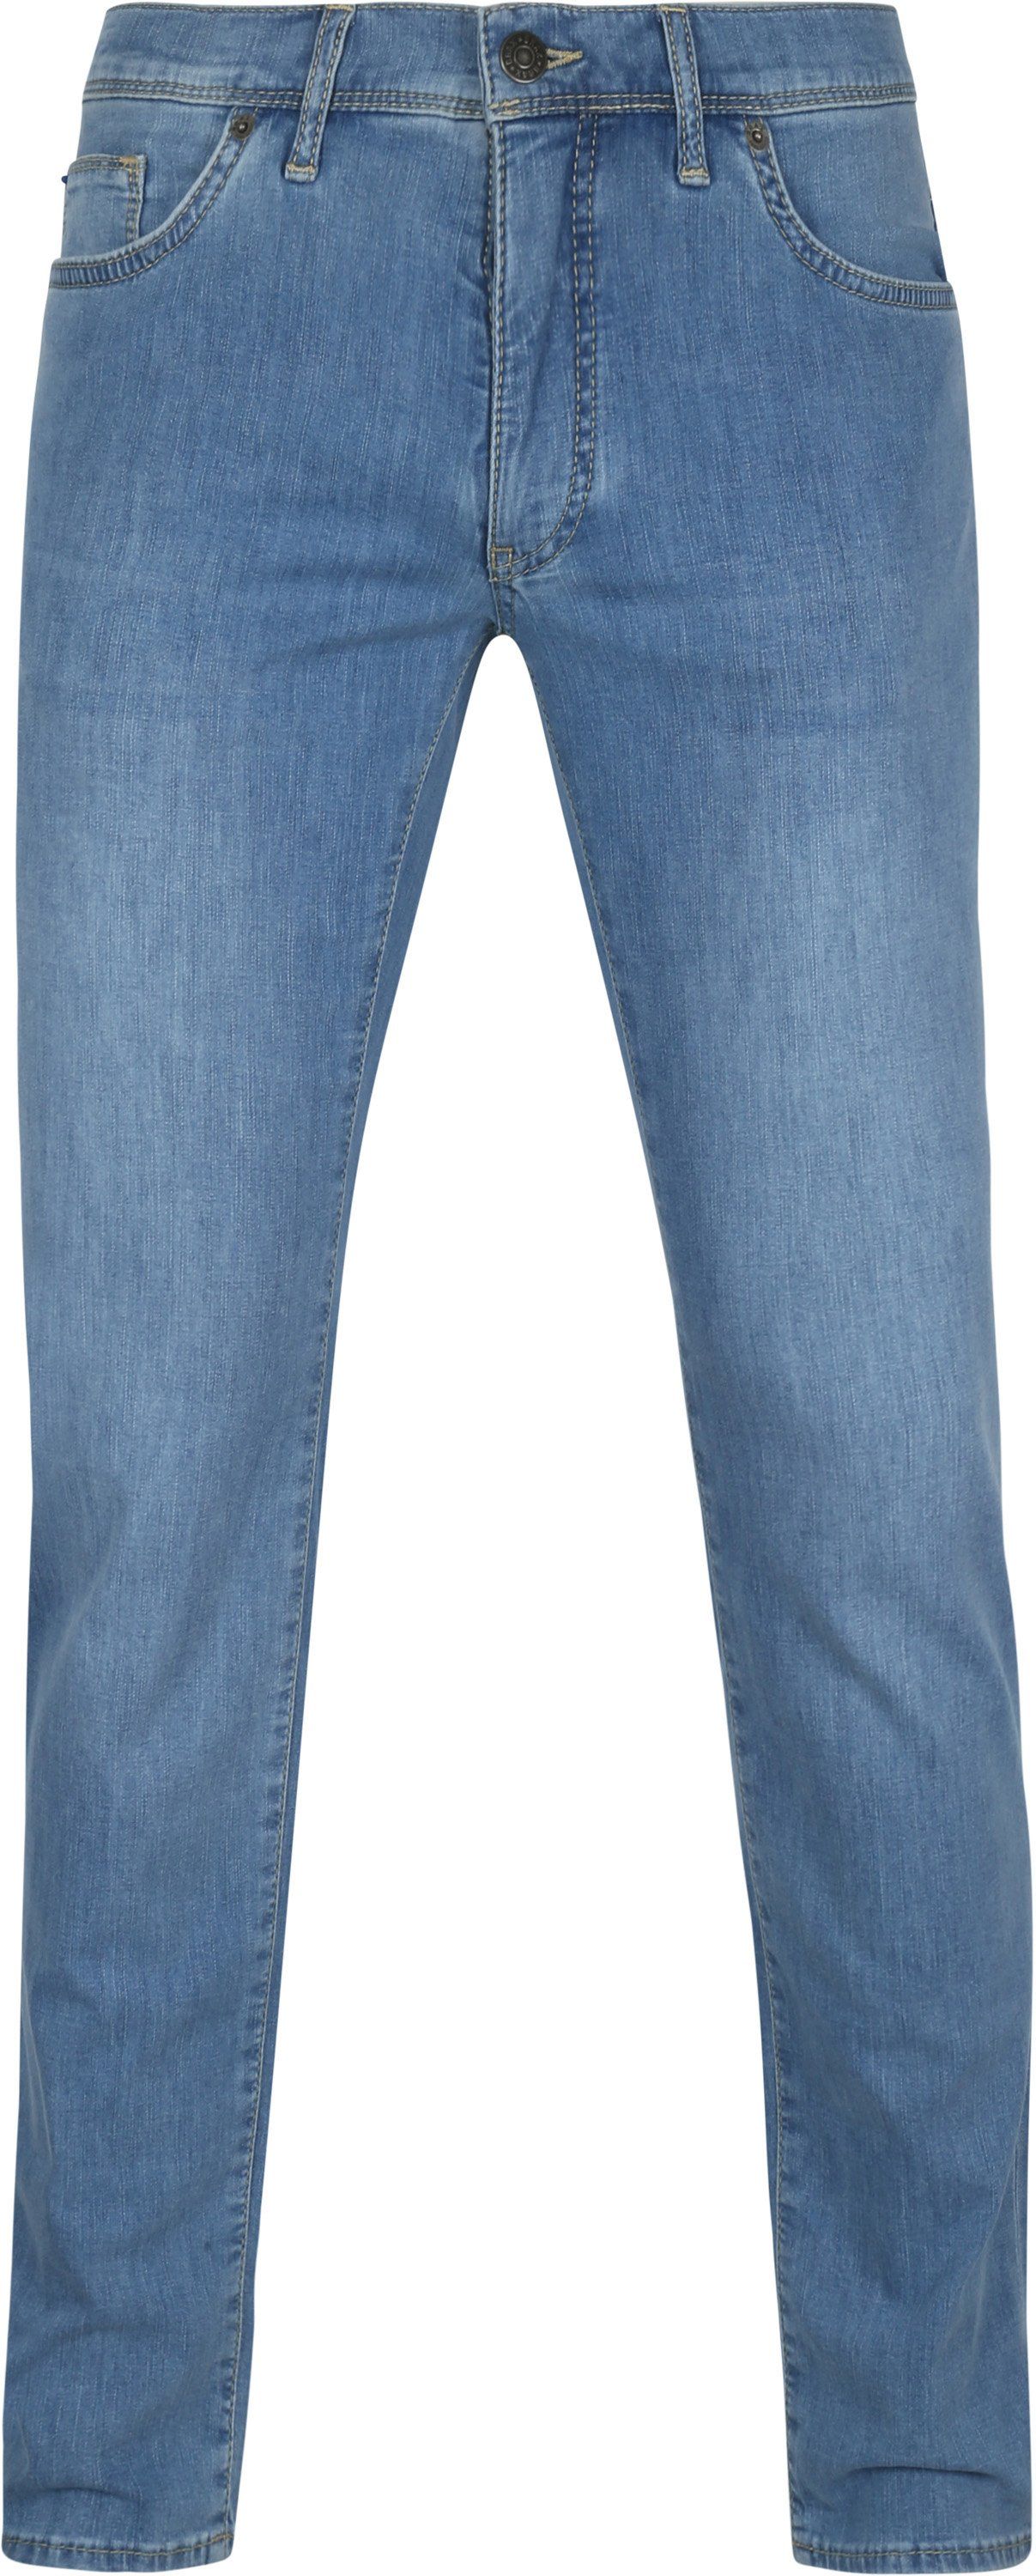 Brax Cadiz Jeans Blue size W 30